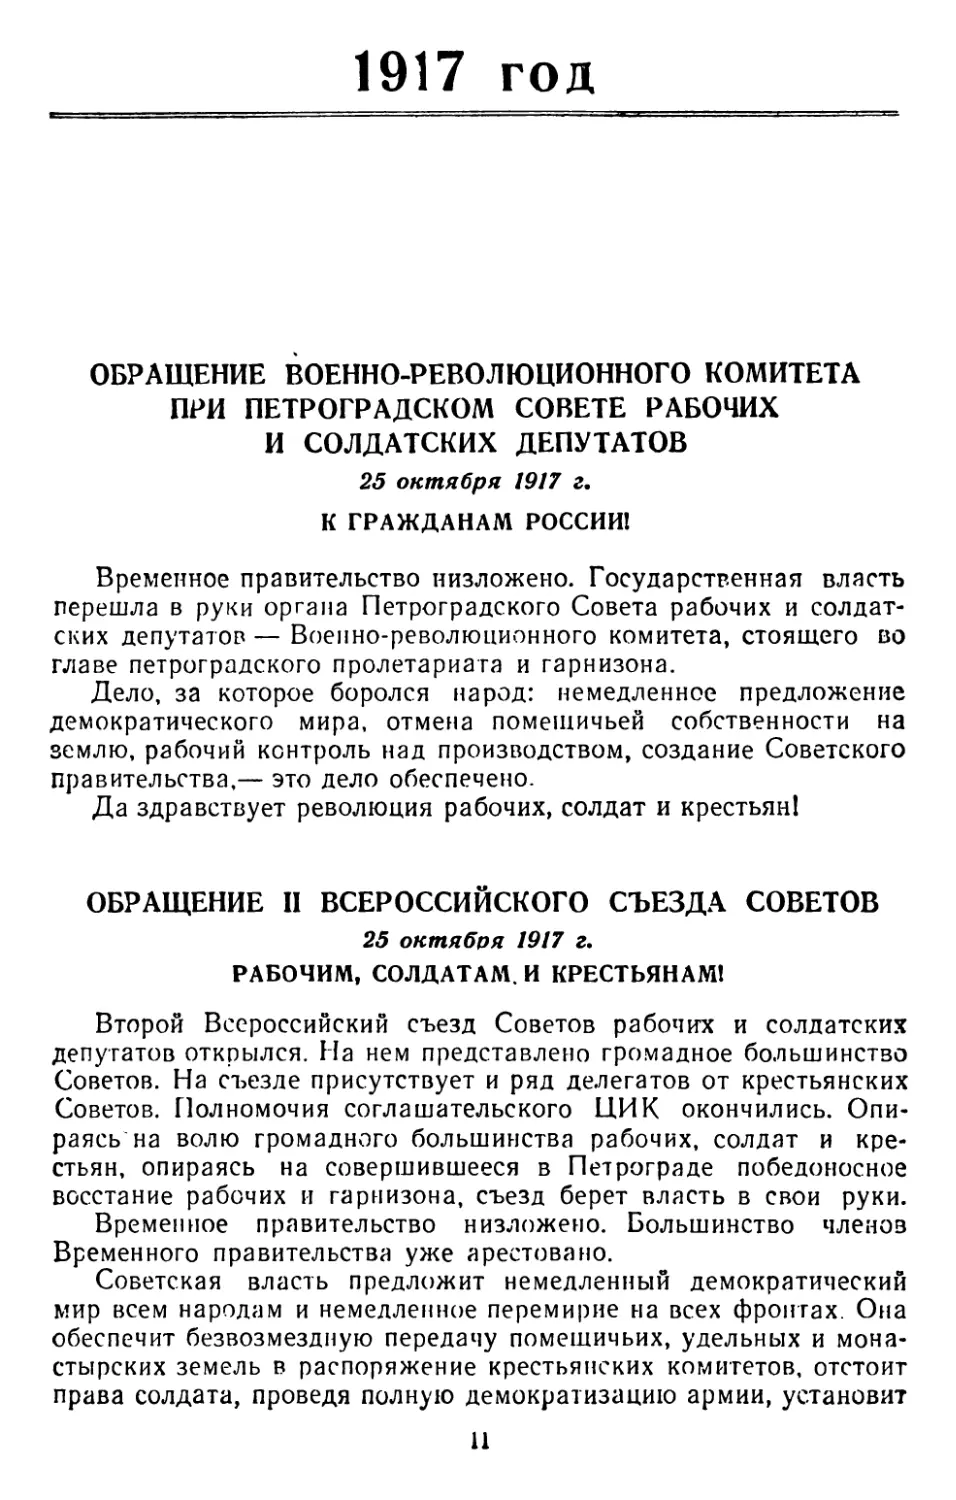 1917 год
Обращение II Всероссийского Съезда Советов, 25 октября 1917 г. Рабочим, солдатам и крестьянам